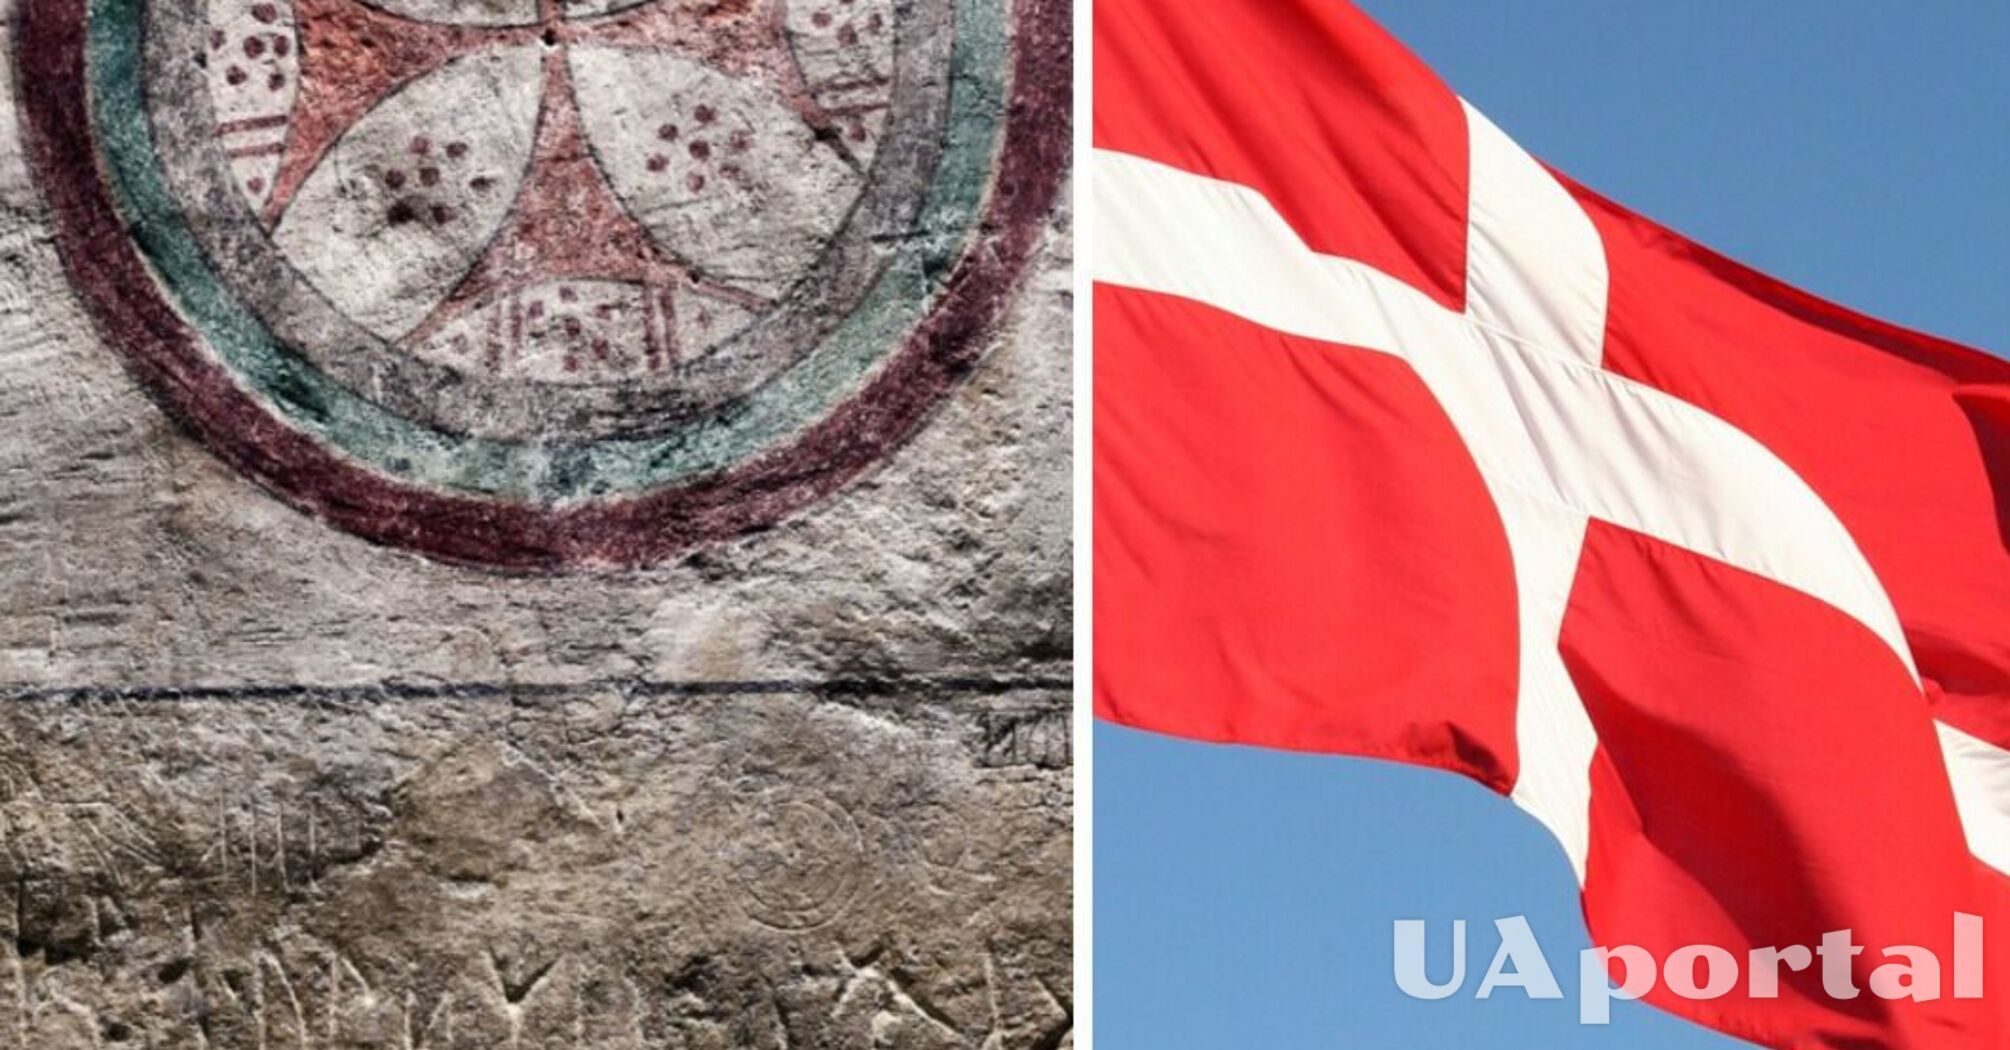 Руническая надпись на стене церкви в Дании оказалась юридическим долгом 800-летней давности (фото)